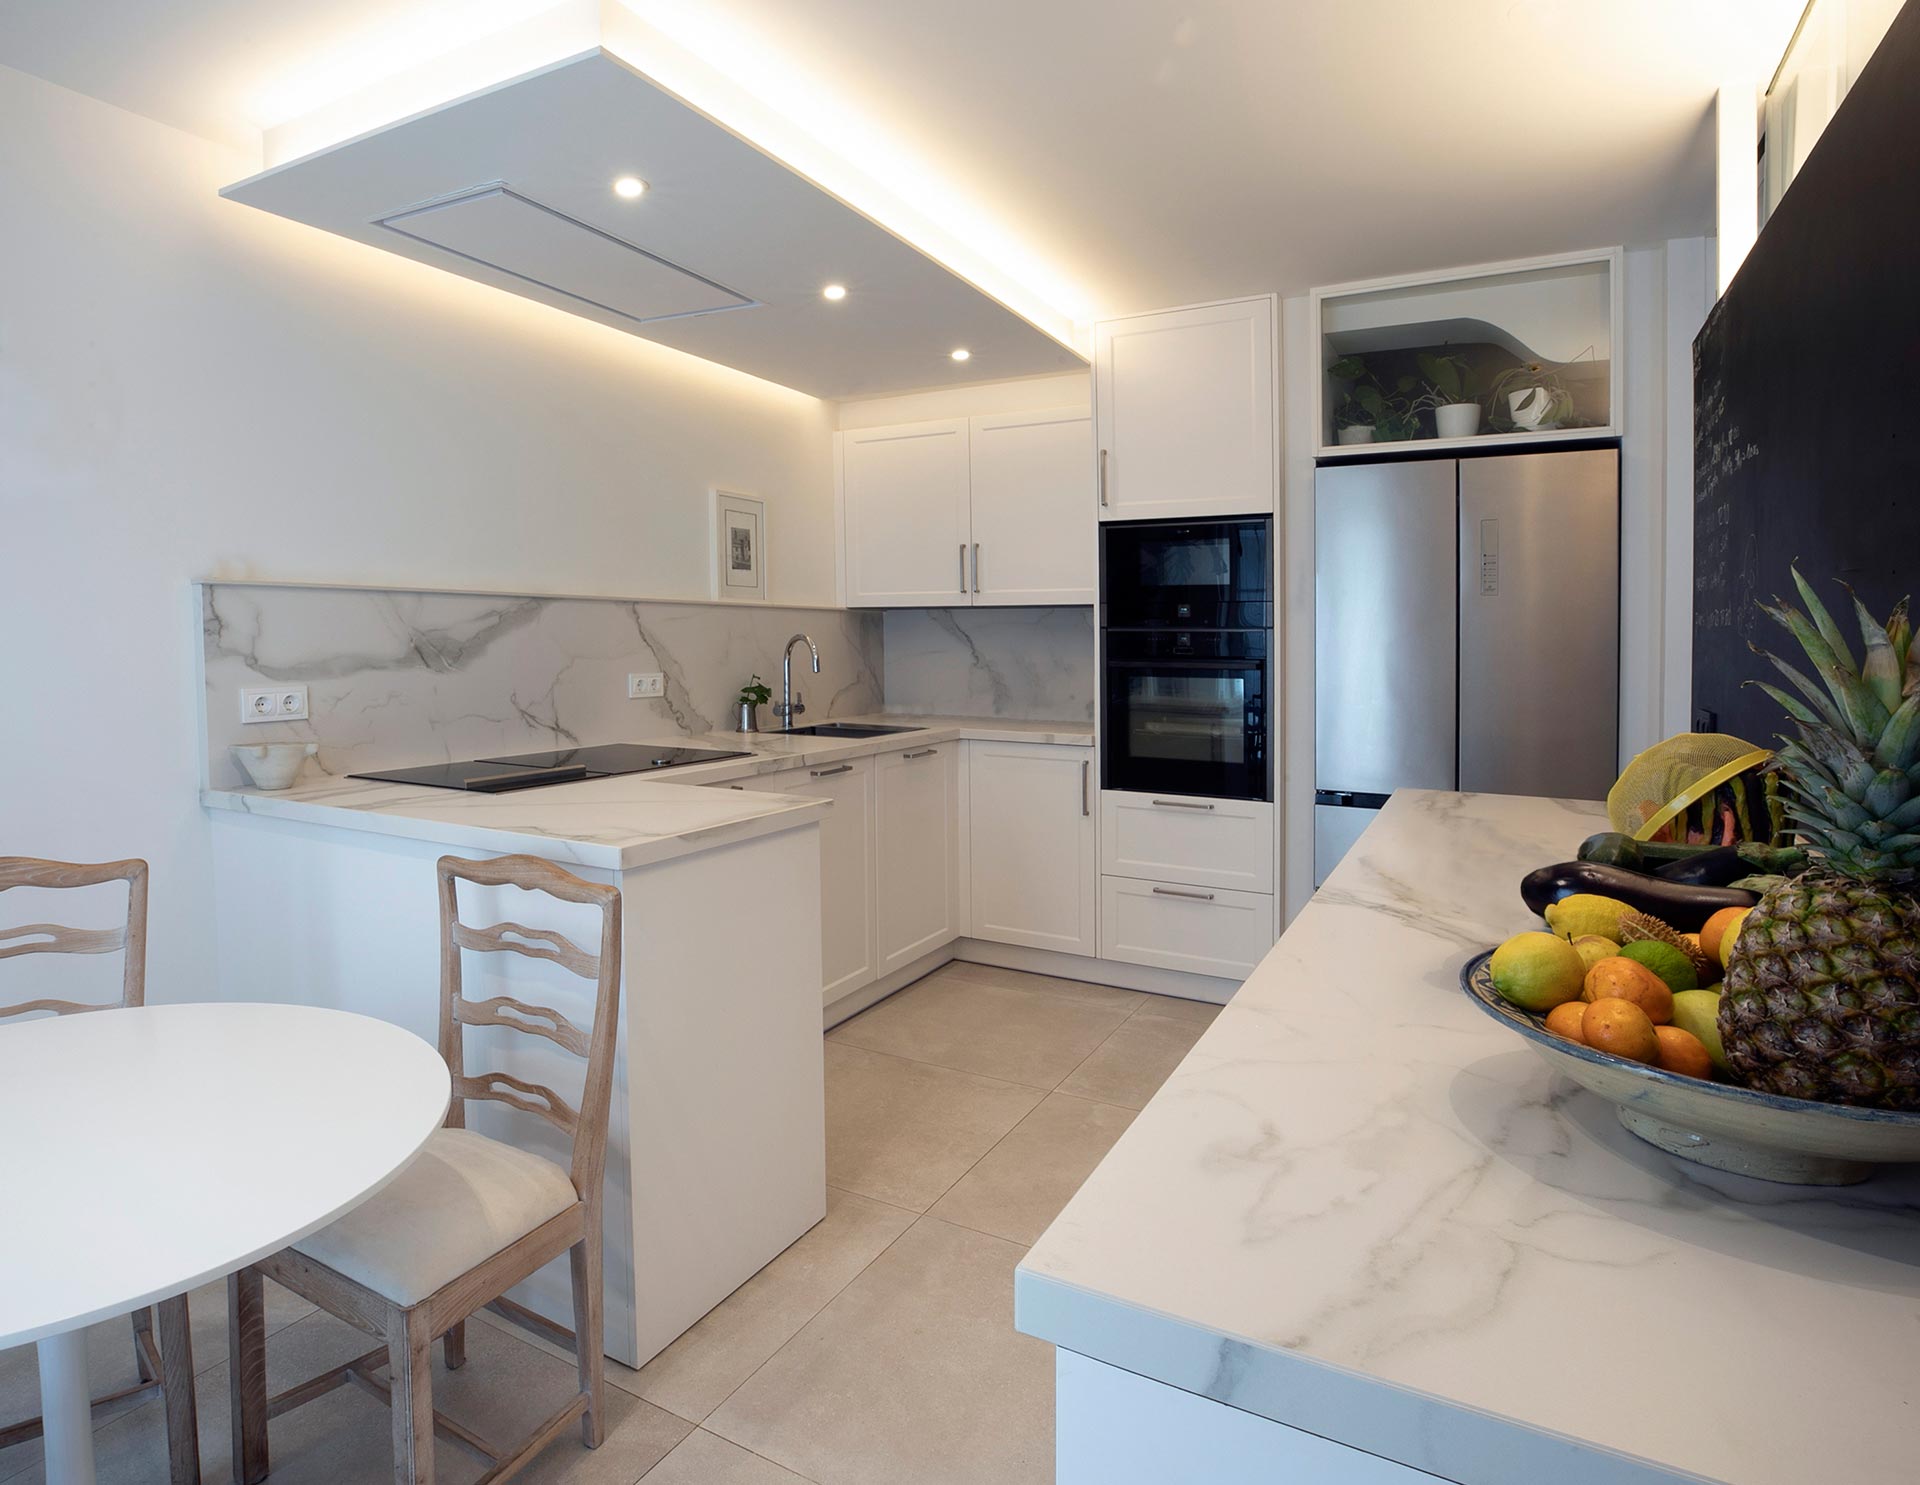 Cocina con iluminación indirecta en reforma de vivienda moderna diseñada por Moah Arquitectos en Santander